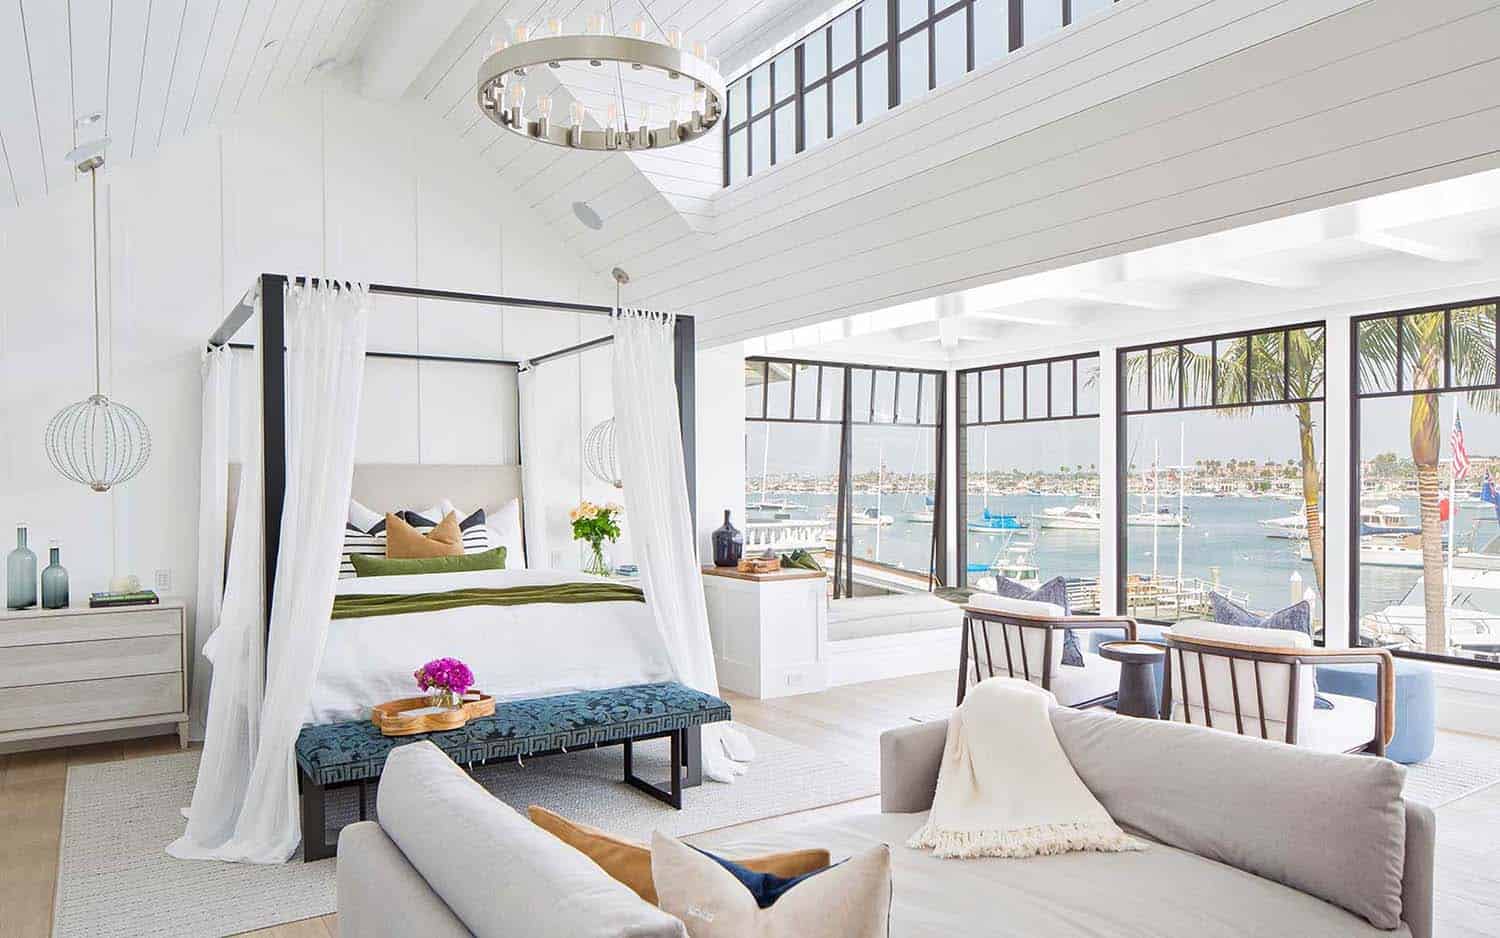 modern-beach-house-beach-style-bedroom